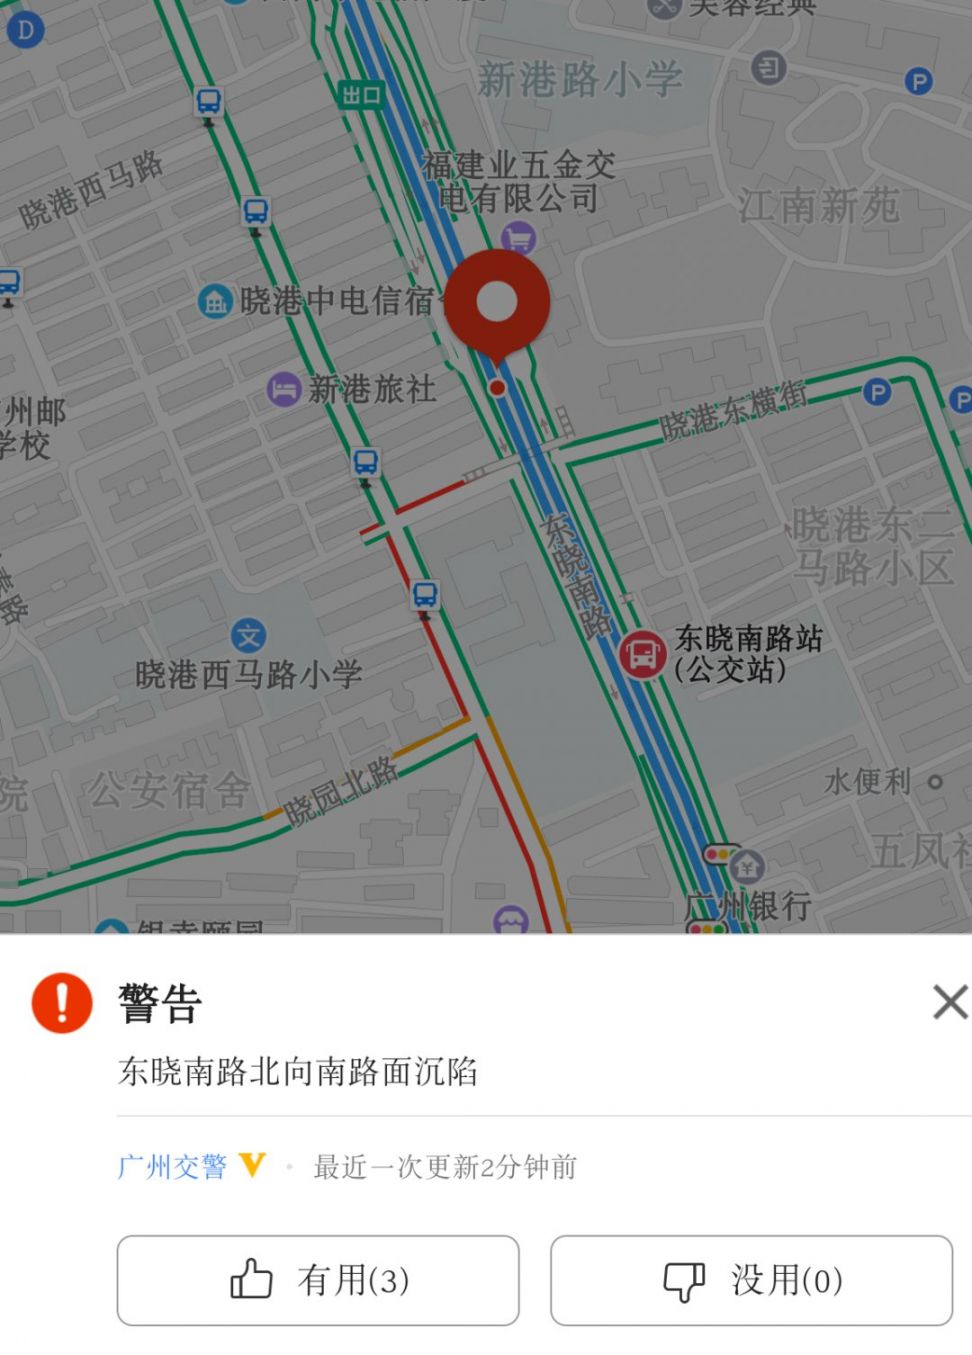 2020年3月31日广州海珠区东晓南路发生地陷 过往车辆请绕行